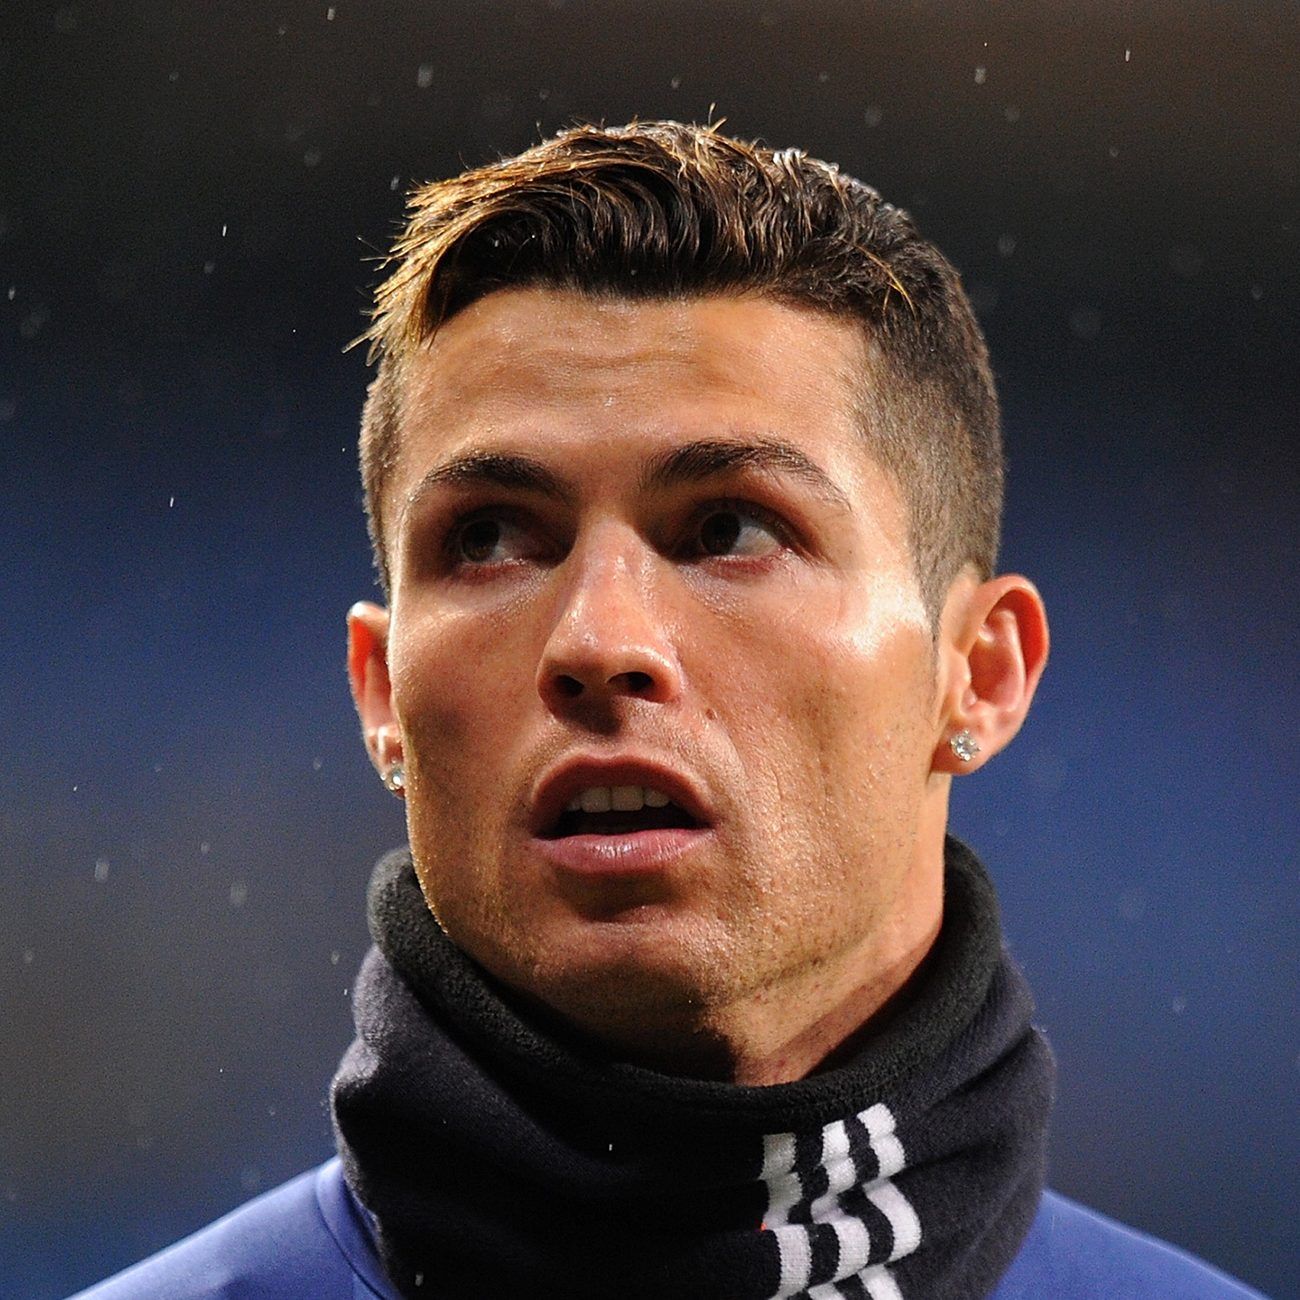 Cristiano Ronaldo Haircut. Ronaldo haircut, Cristiano ronaldo haircut, Cristiano ronaldo hairstyle